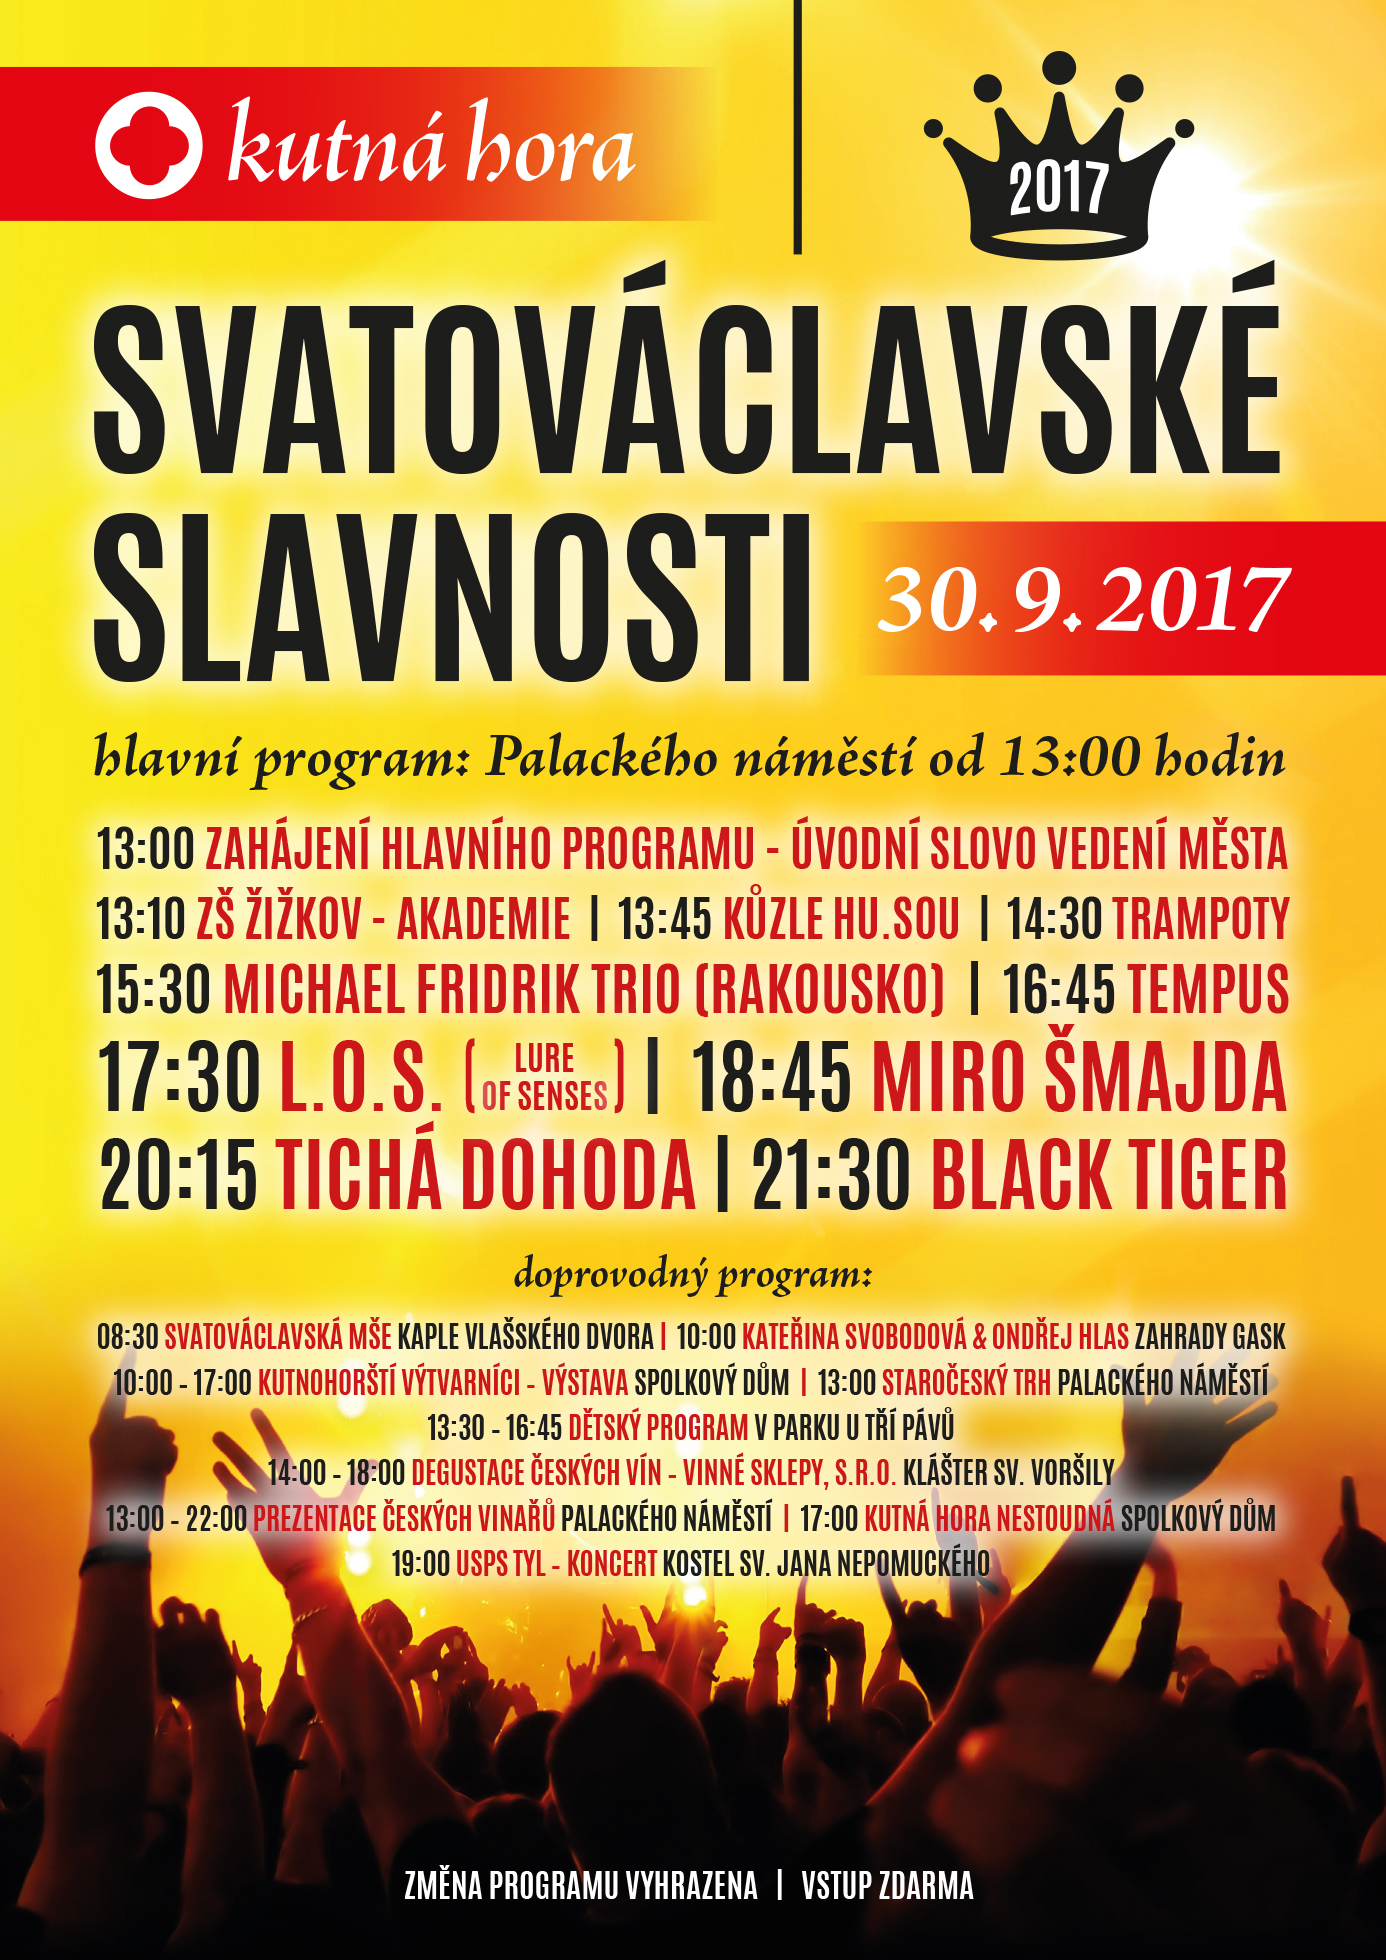 2502-svatovaclavske-slavnosti-2017-plakat-a2-final.jpg